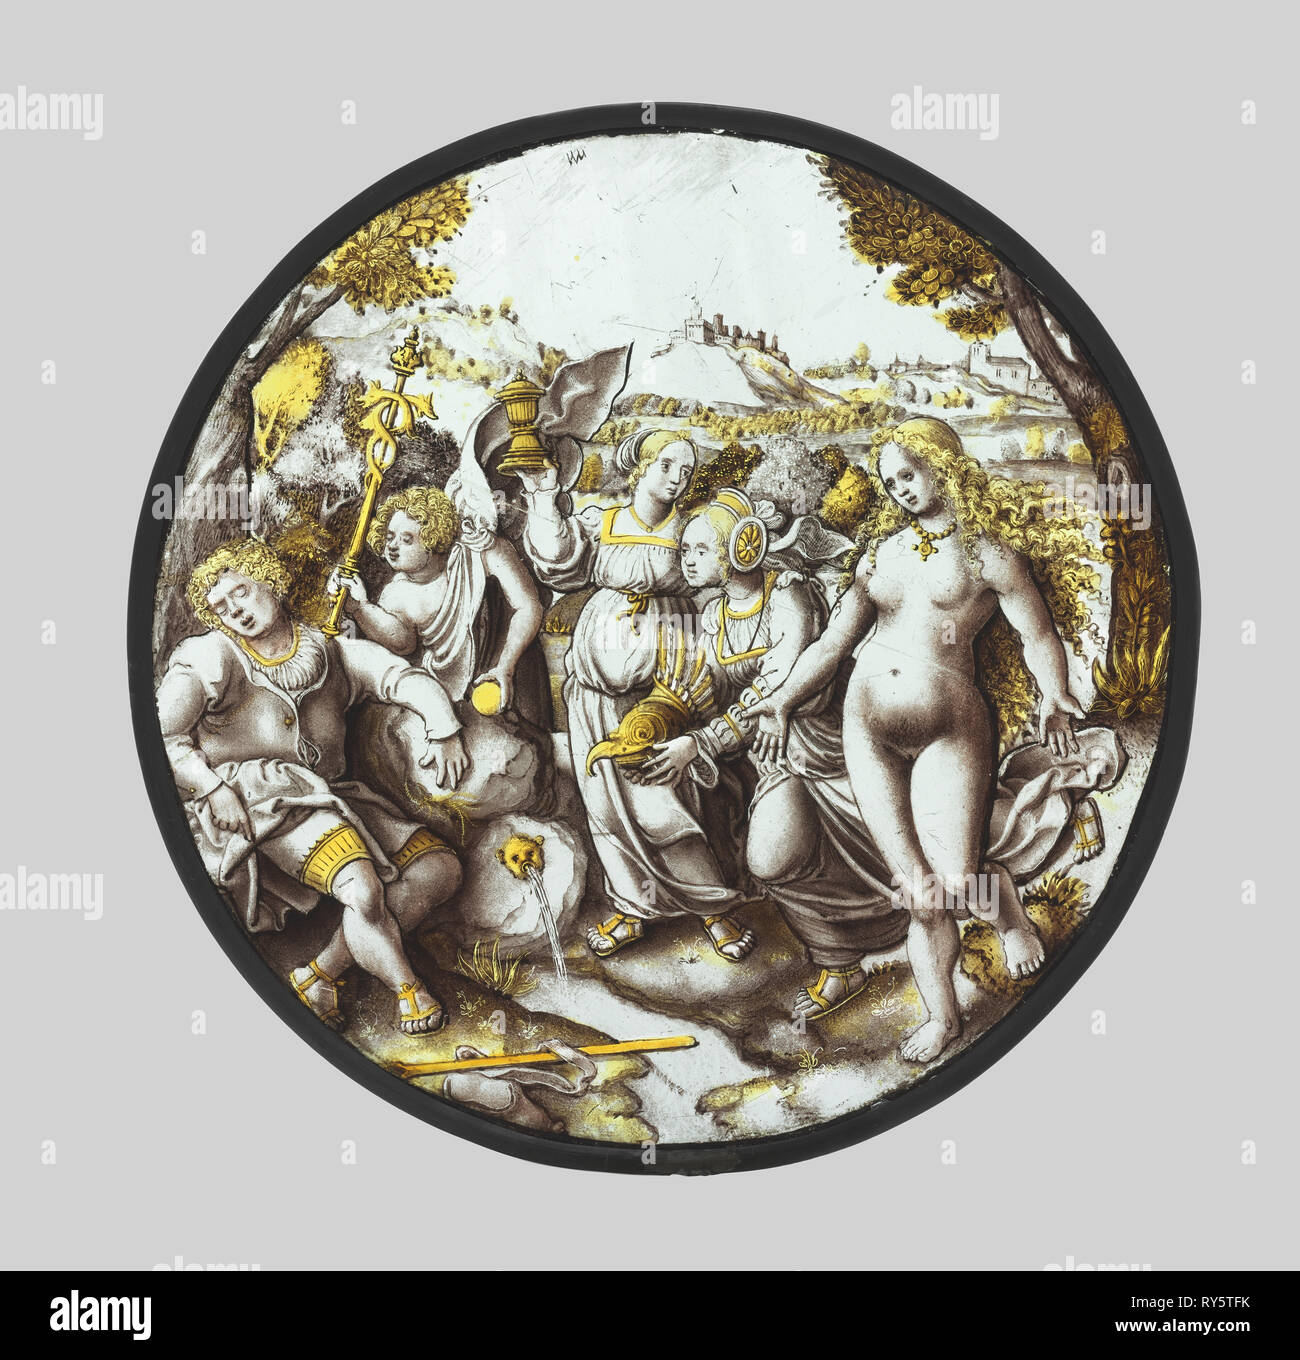 Le jugement de Paris, ch. 1510-1520. Le sud des Pays-Bas, xvie siècle. À l'argent cocarde verre diamètre : 22,3 cm ; (8 3/4 po Banque D'Images